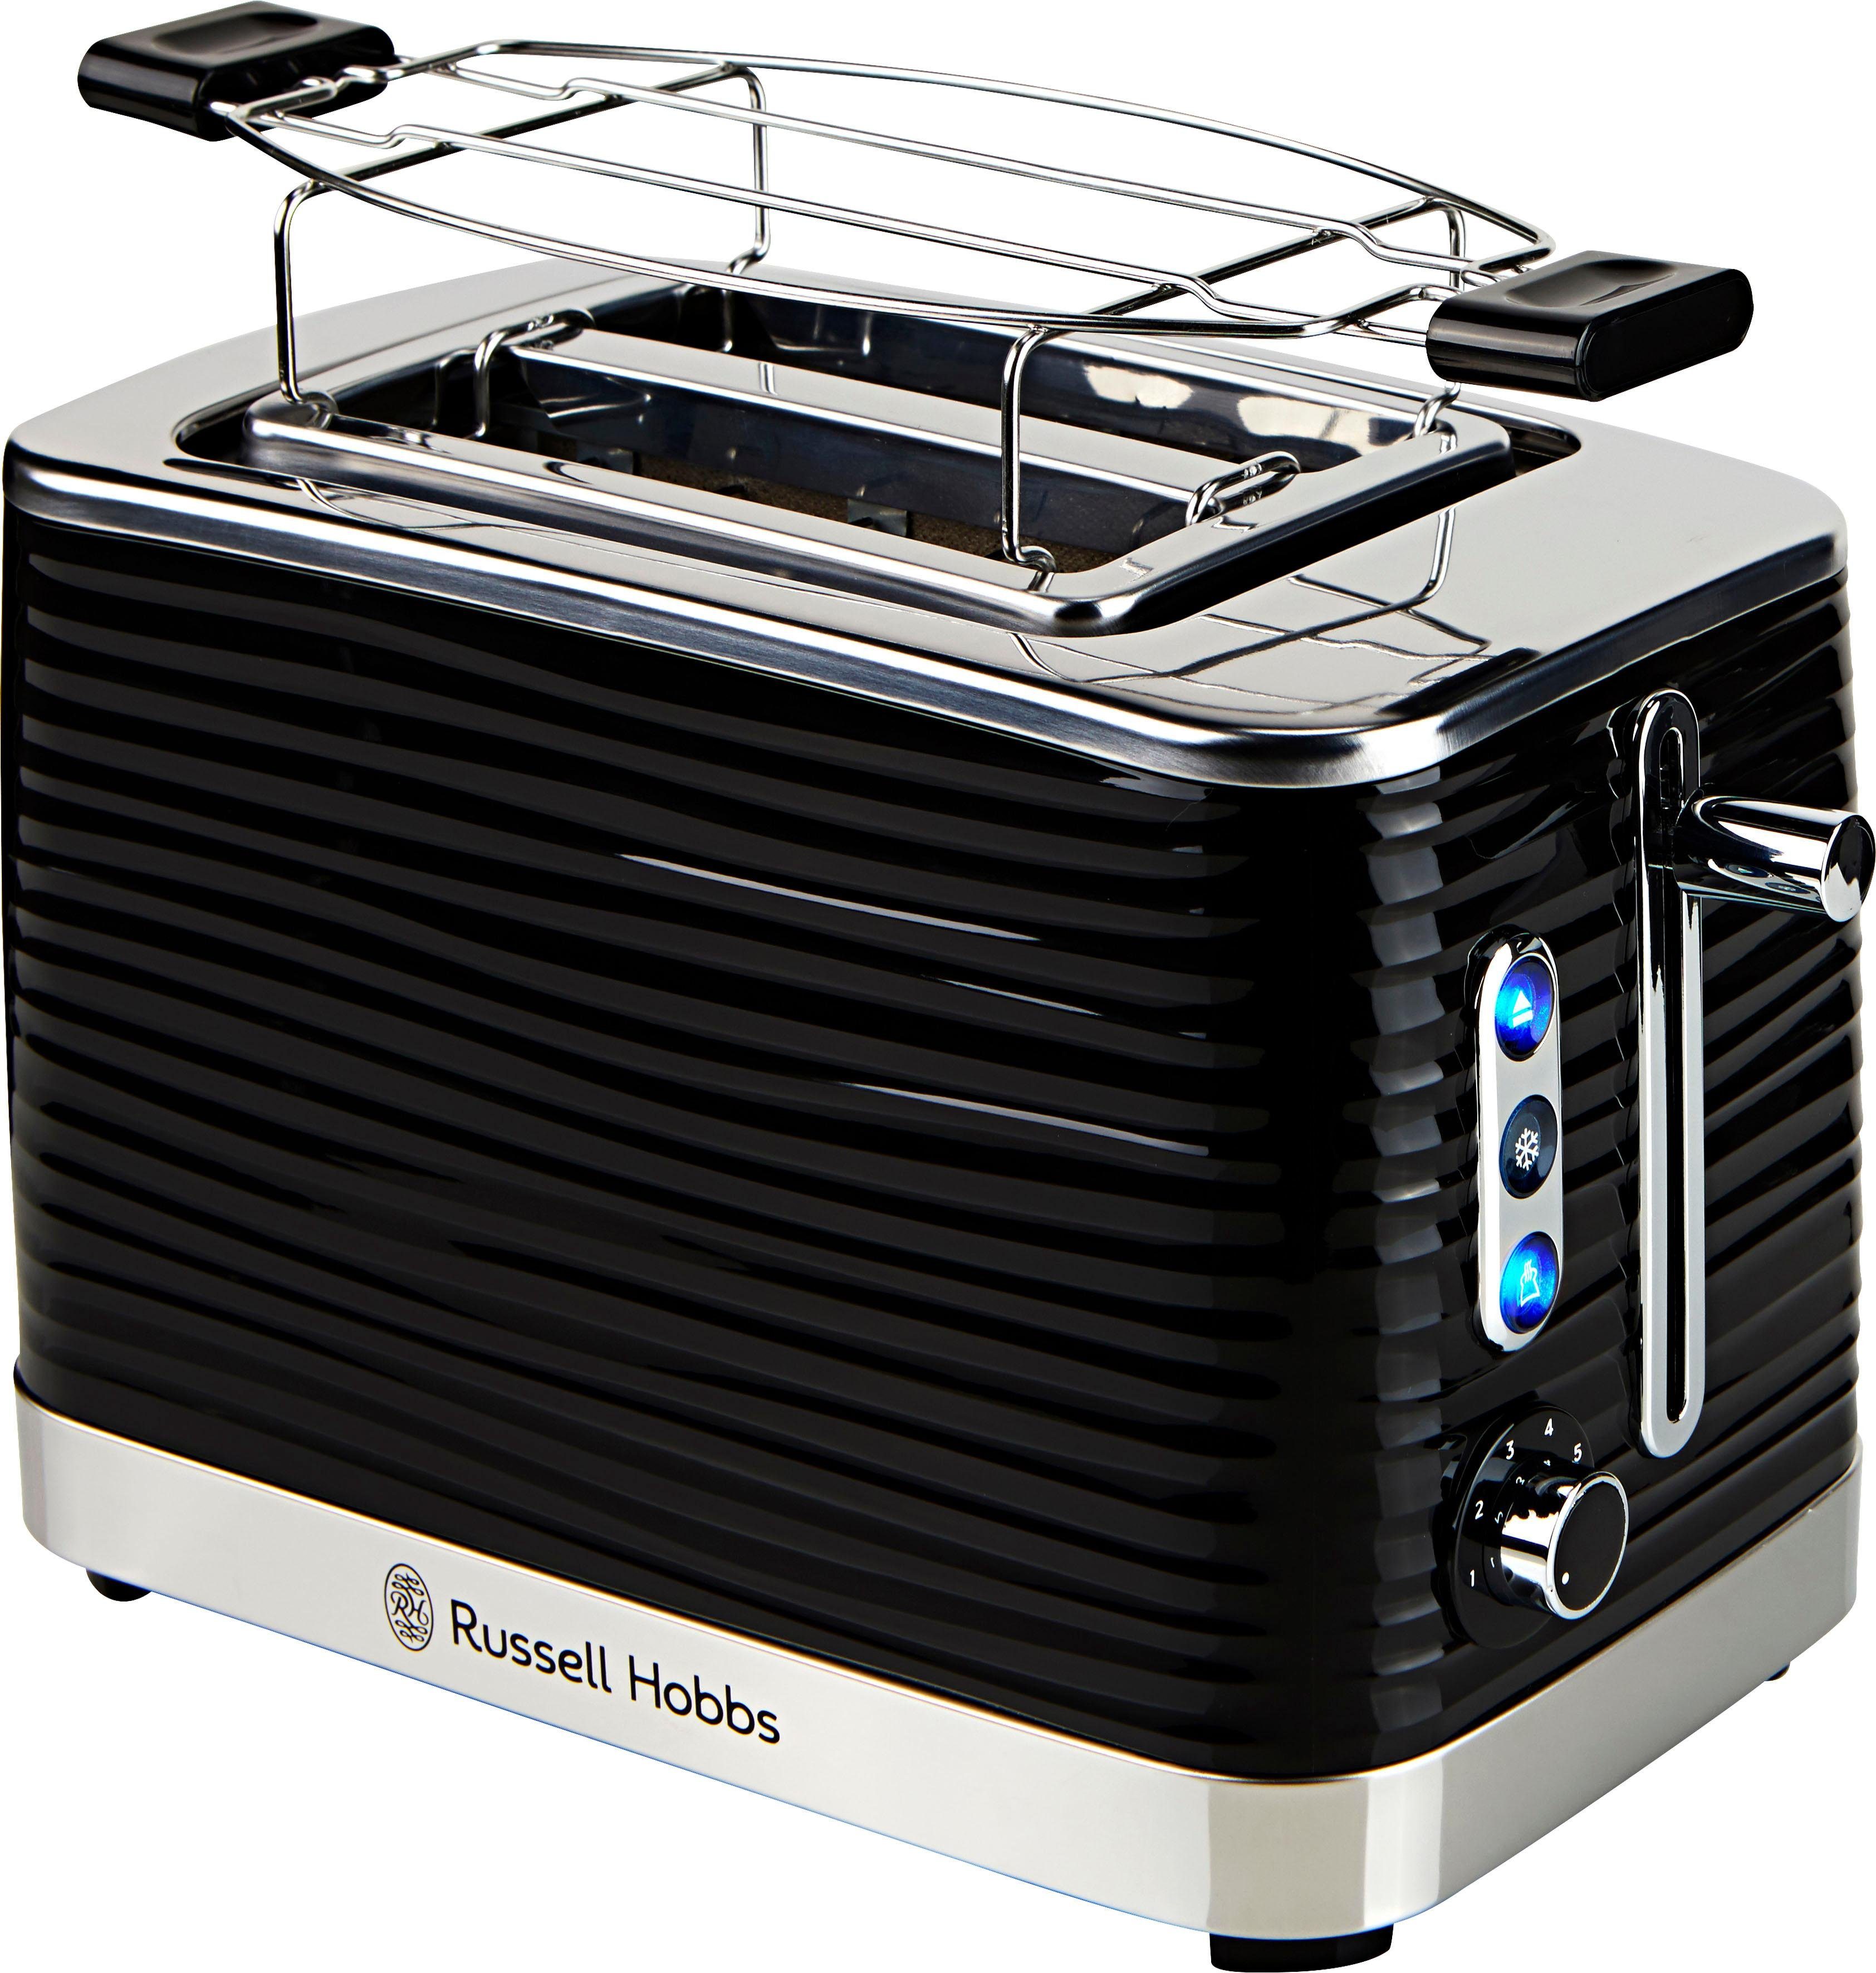 RUSSELL HOBBS Toaster Inspire 24371-56, 2 kurze Schlitze, 1050 W, Lift&Look  Funktion ermöglicht das Anschauen des Toastes während des Röstens